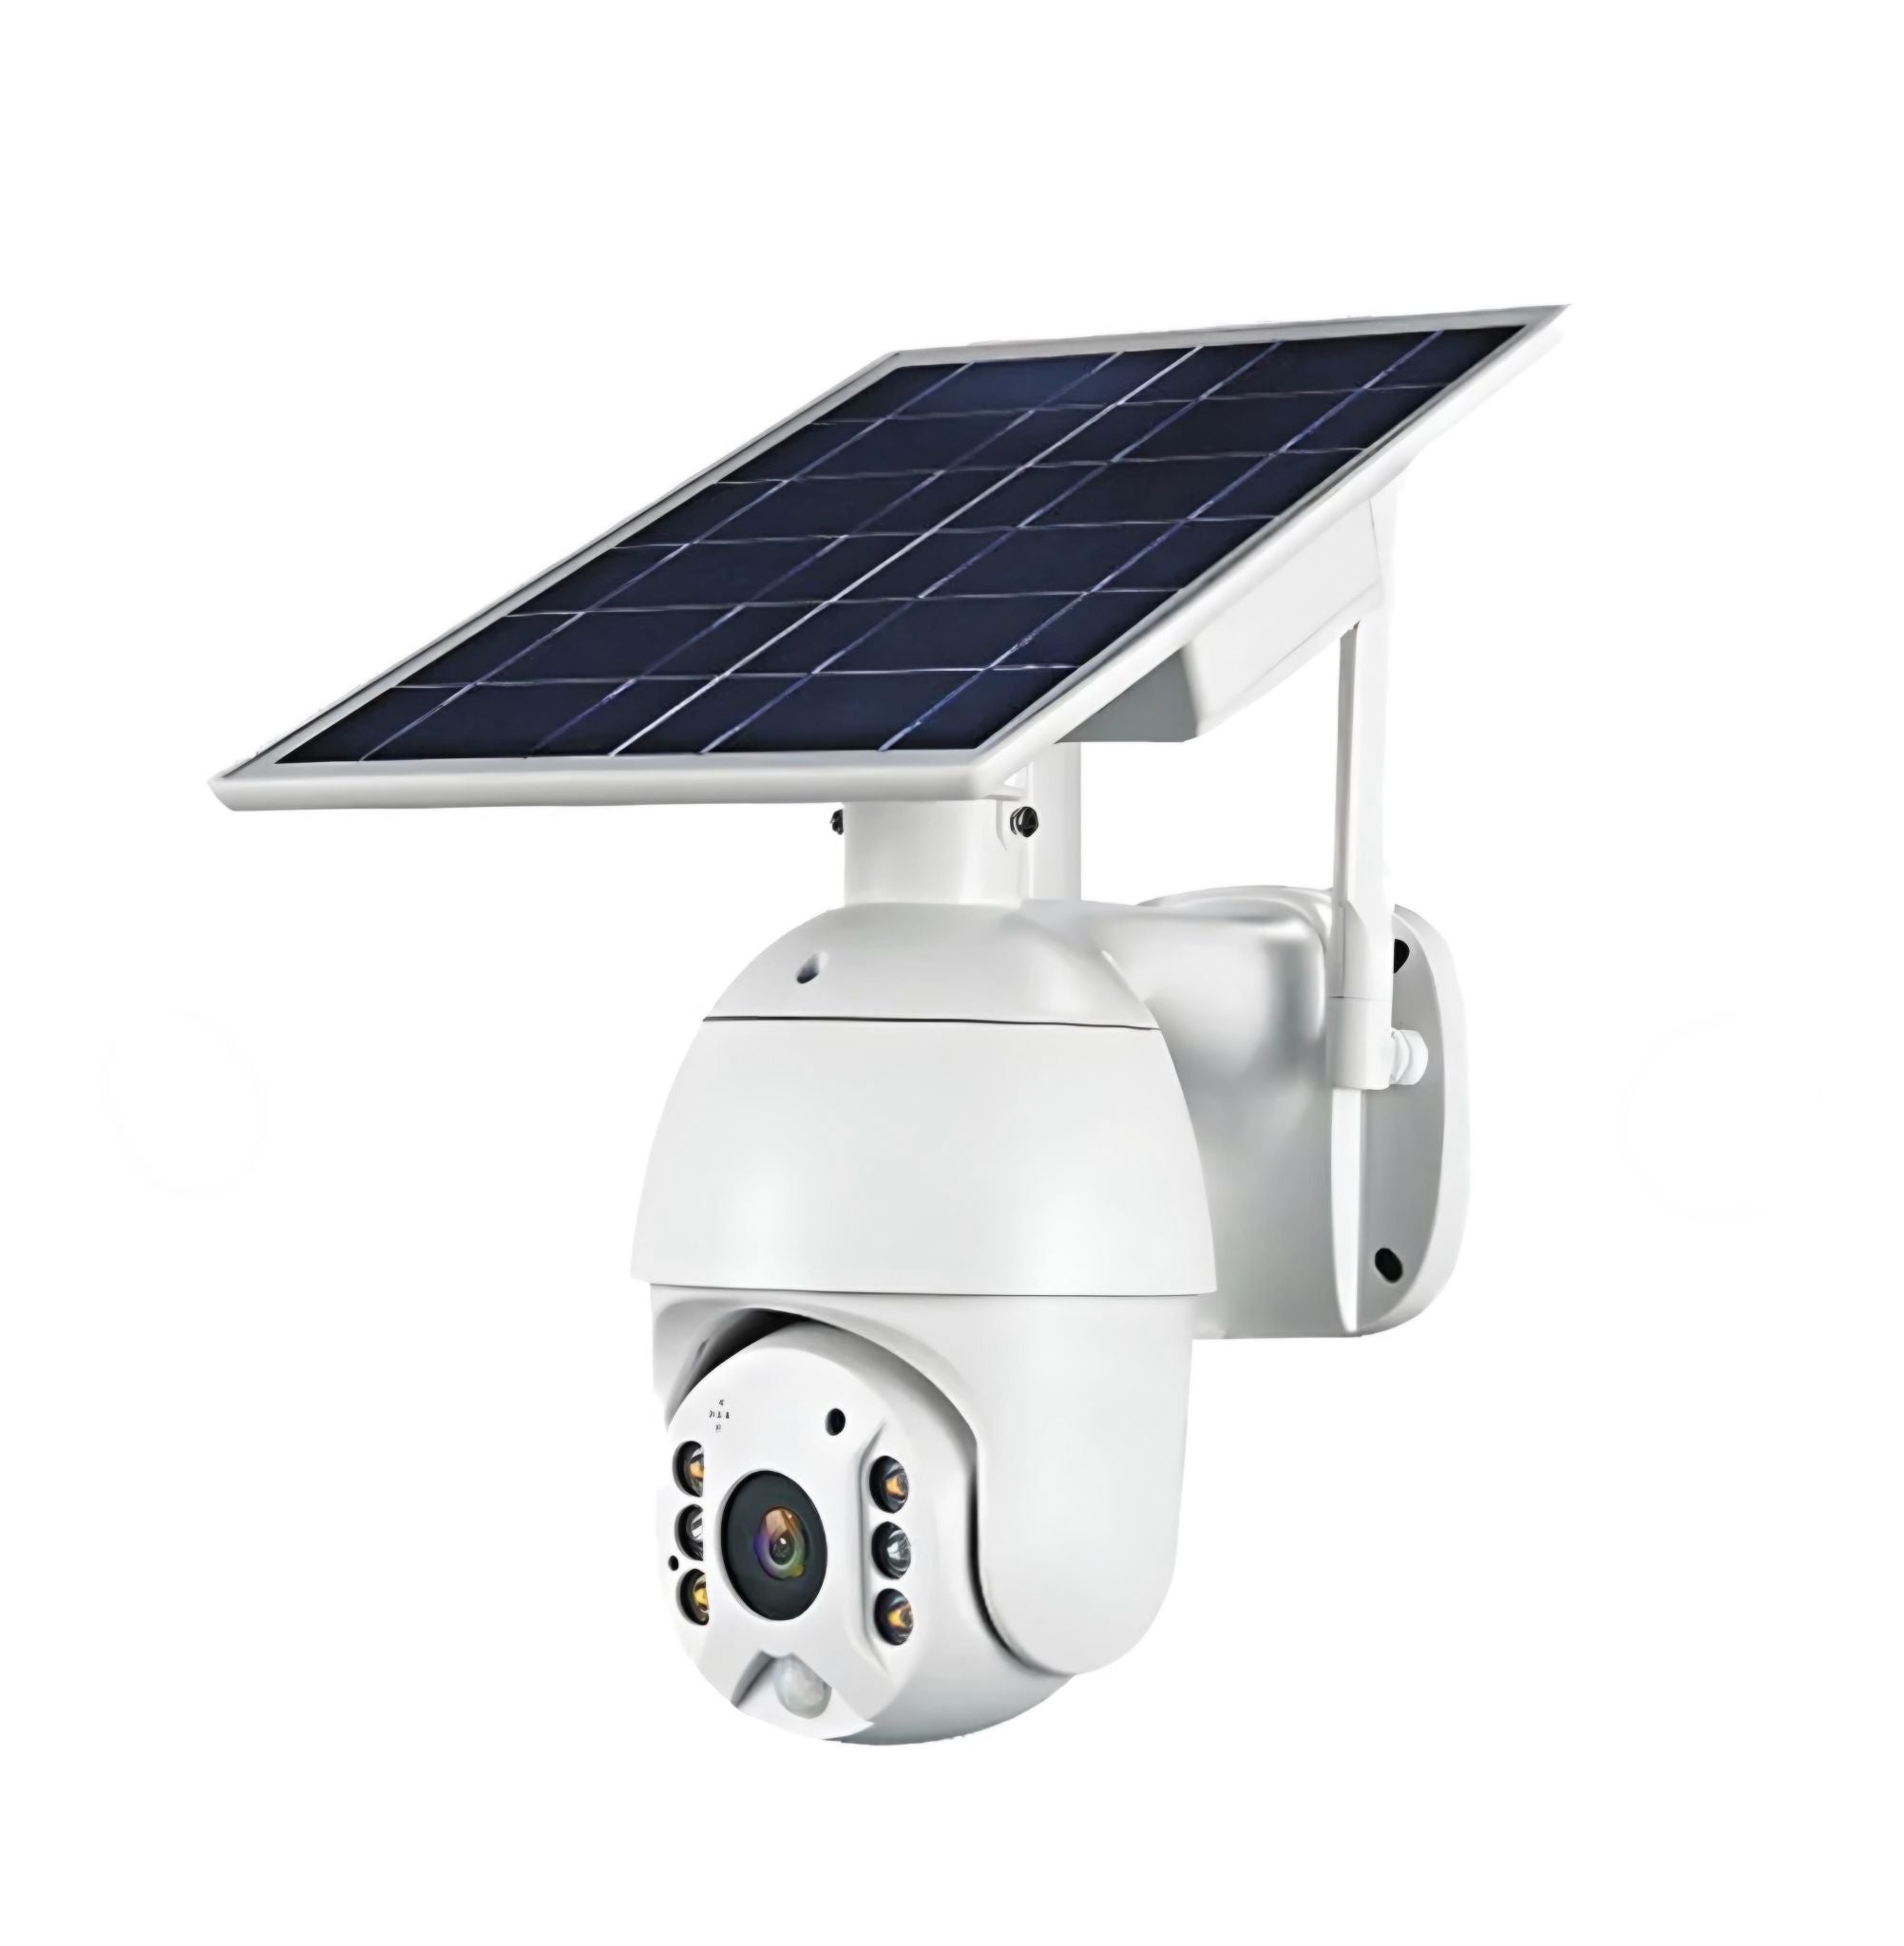 Crony solar power camera